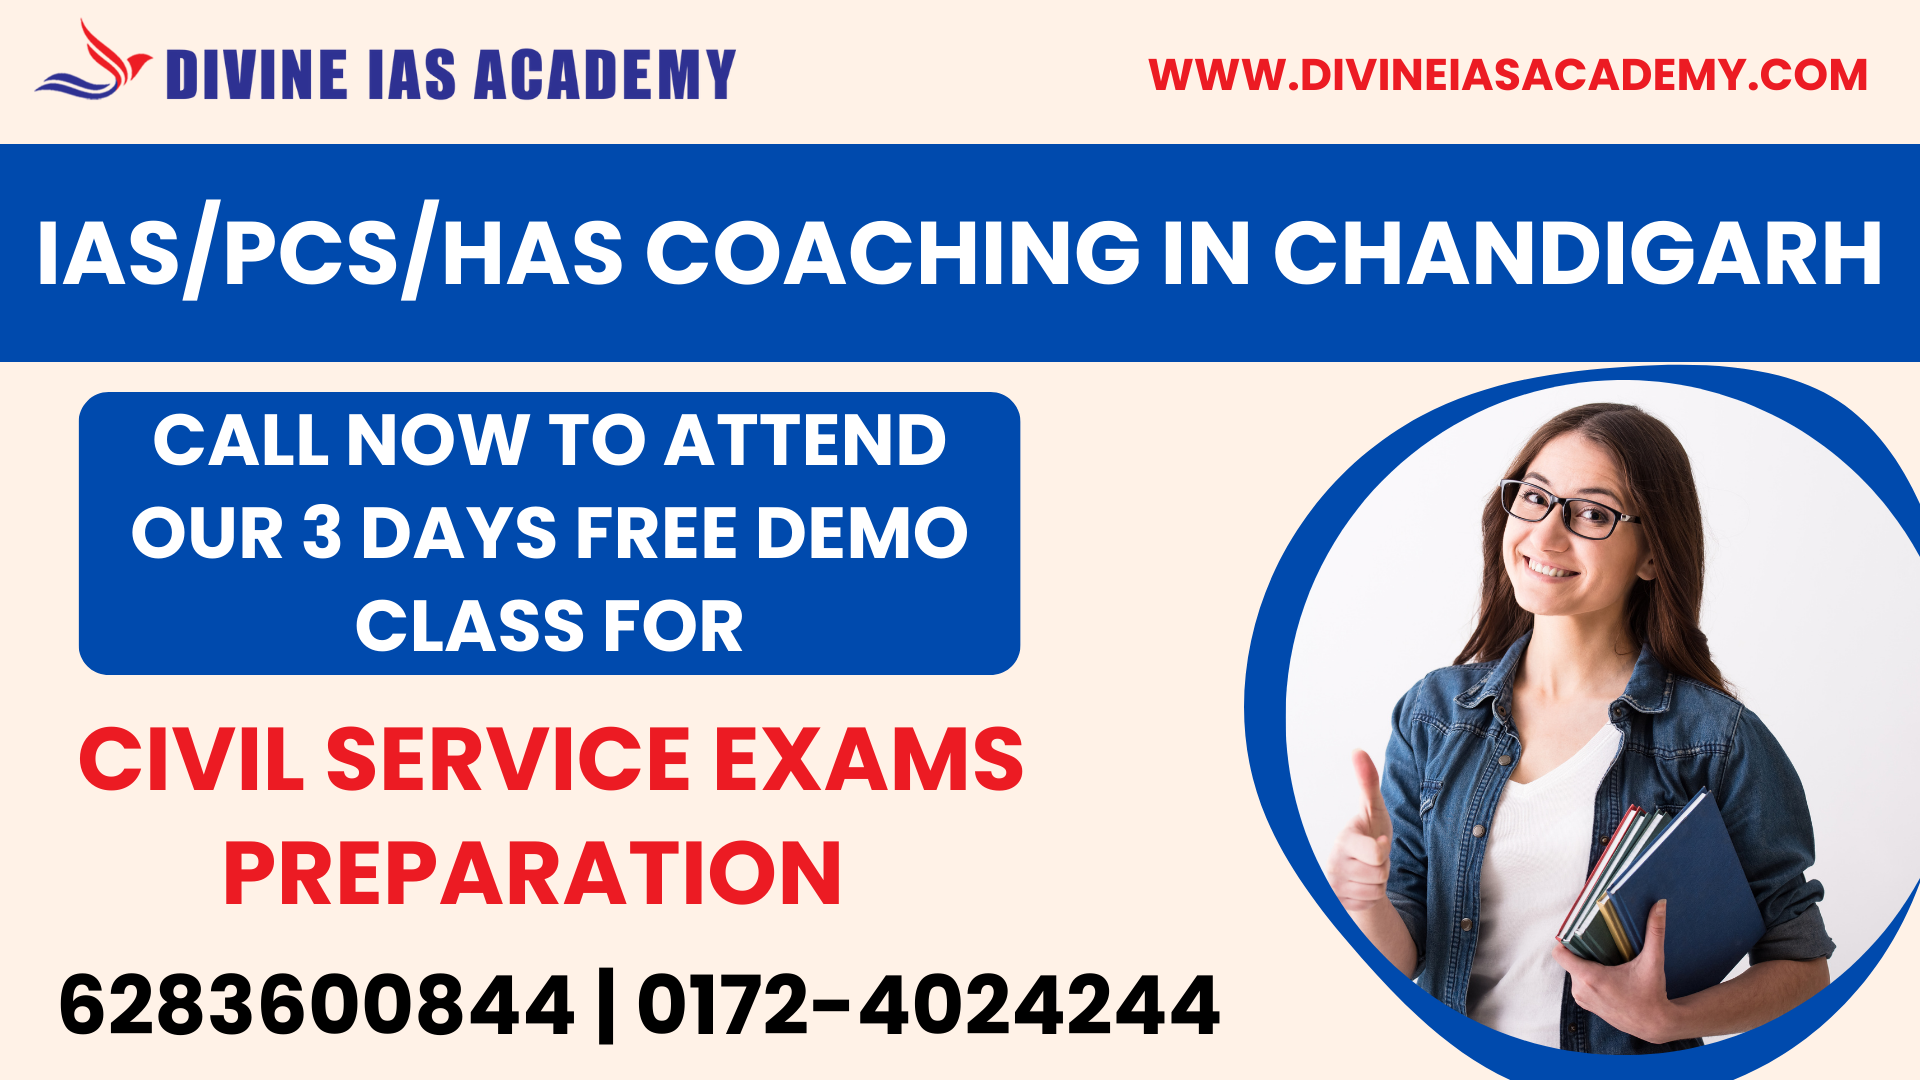 PCS Coaching in Chandigarh